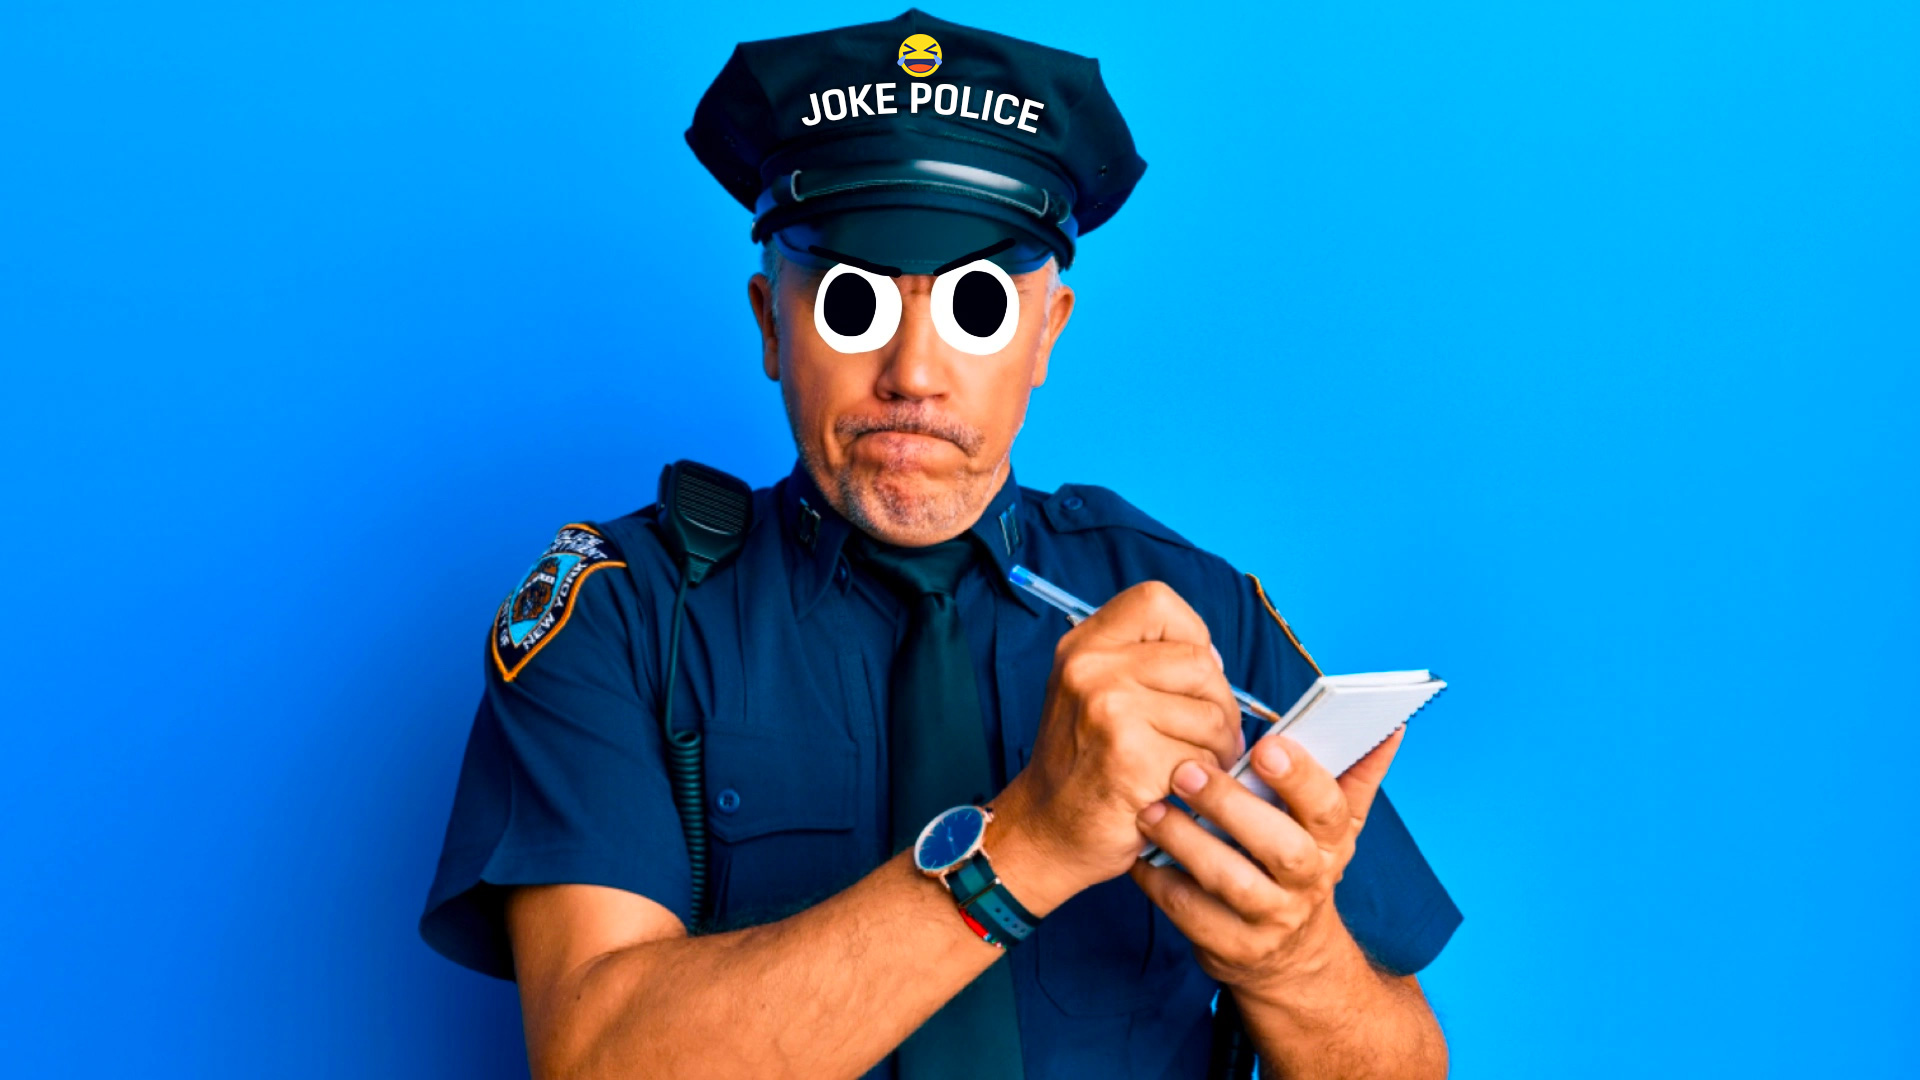 The joke police